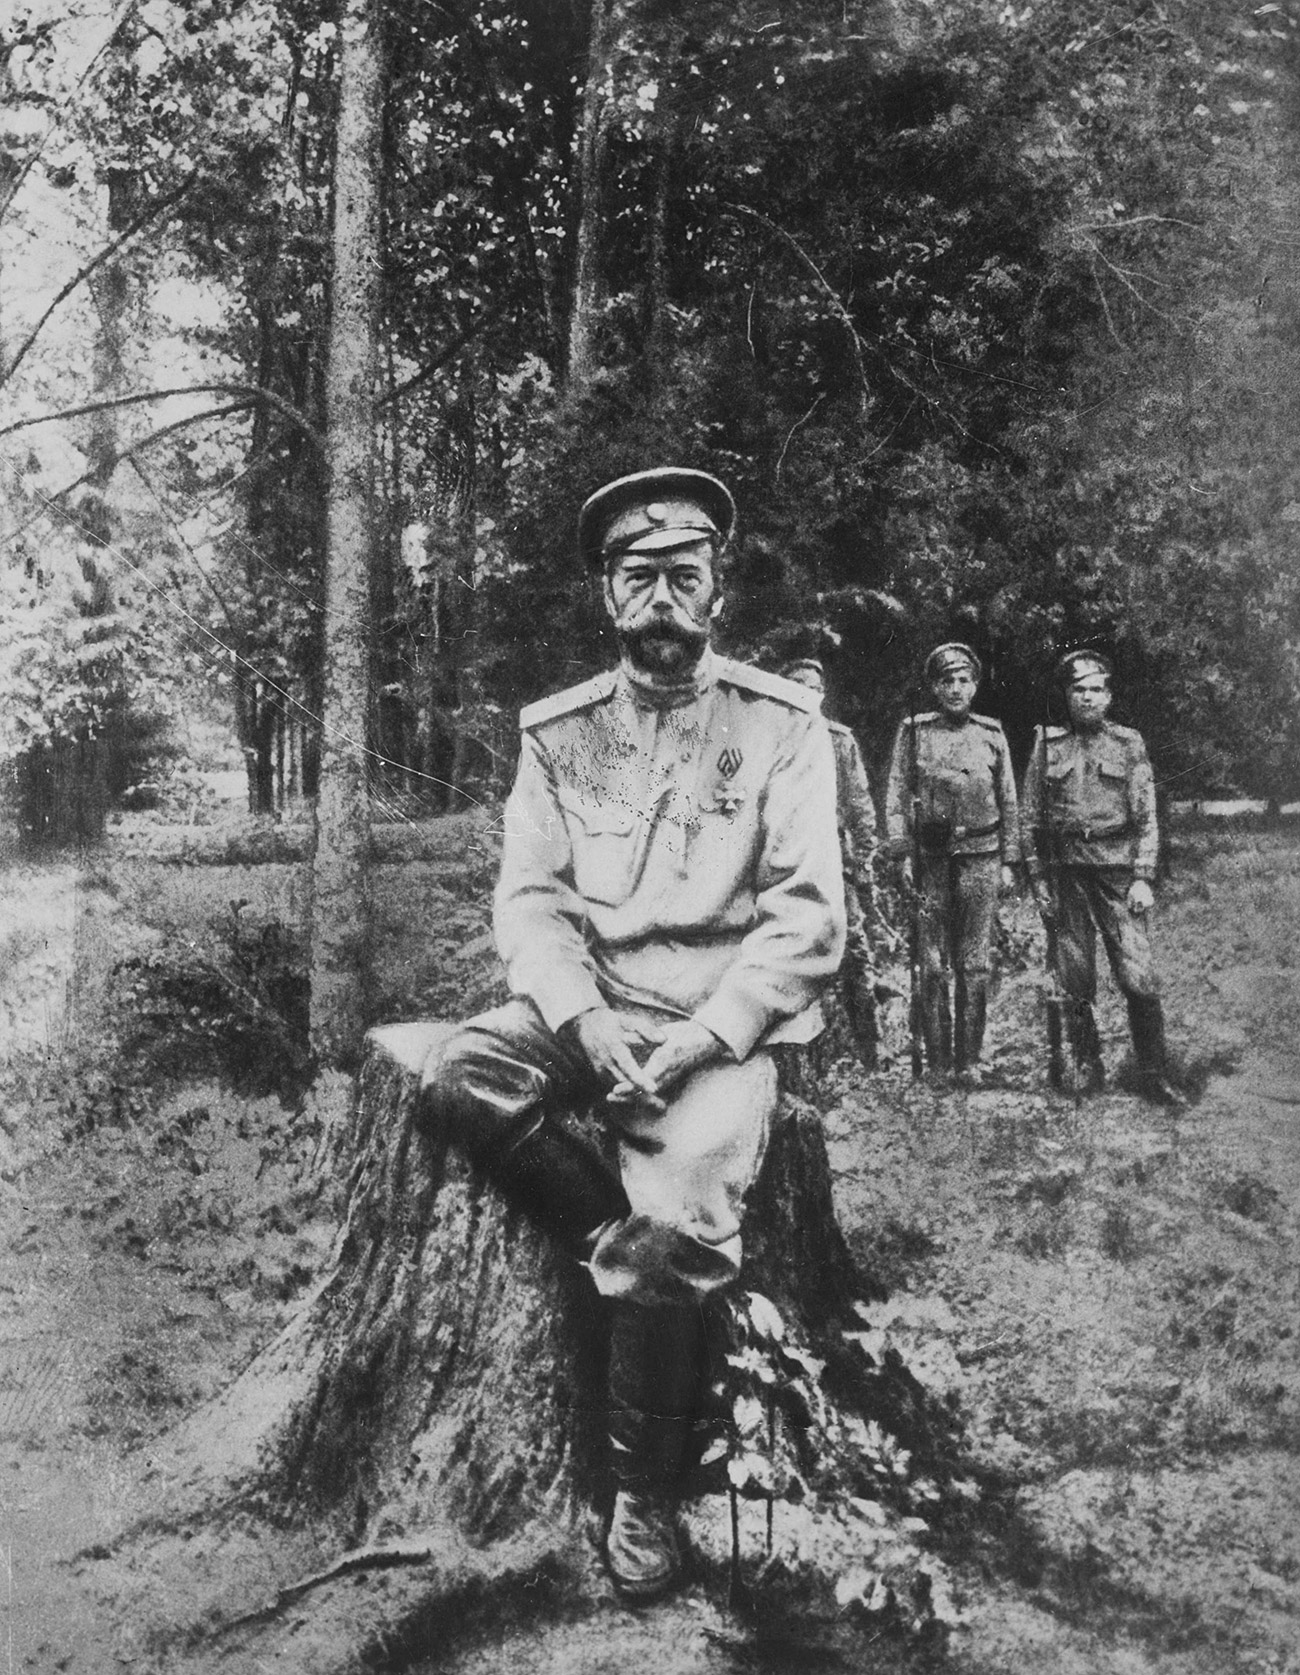 Ena od zadnjih fotografij carja Nikolaja, Jekaterinburg, julij 1918. / Global LookPress